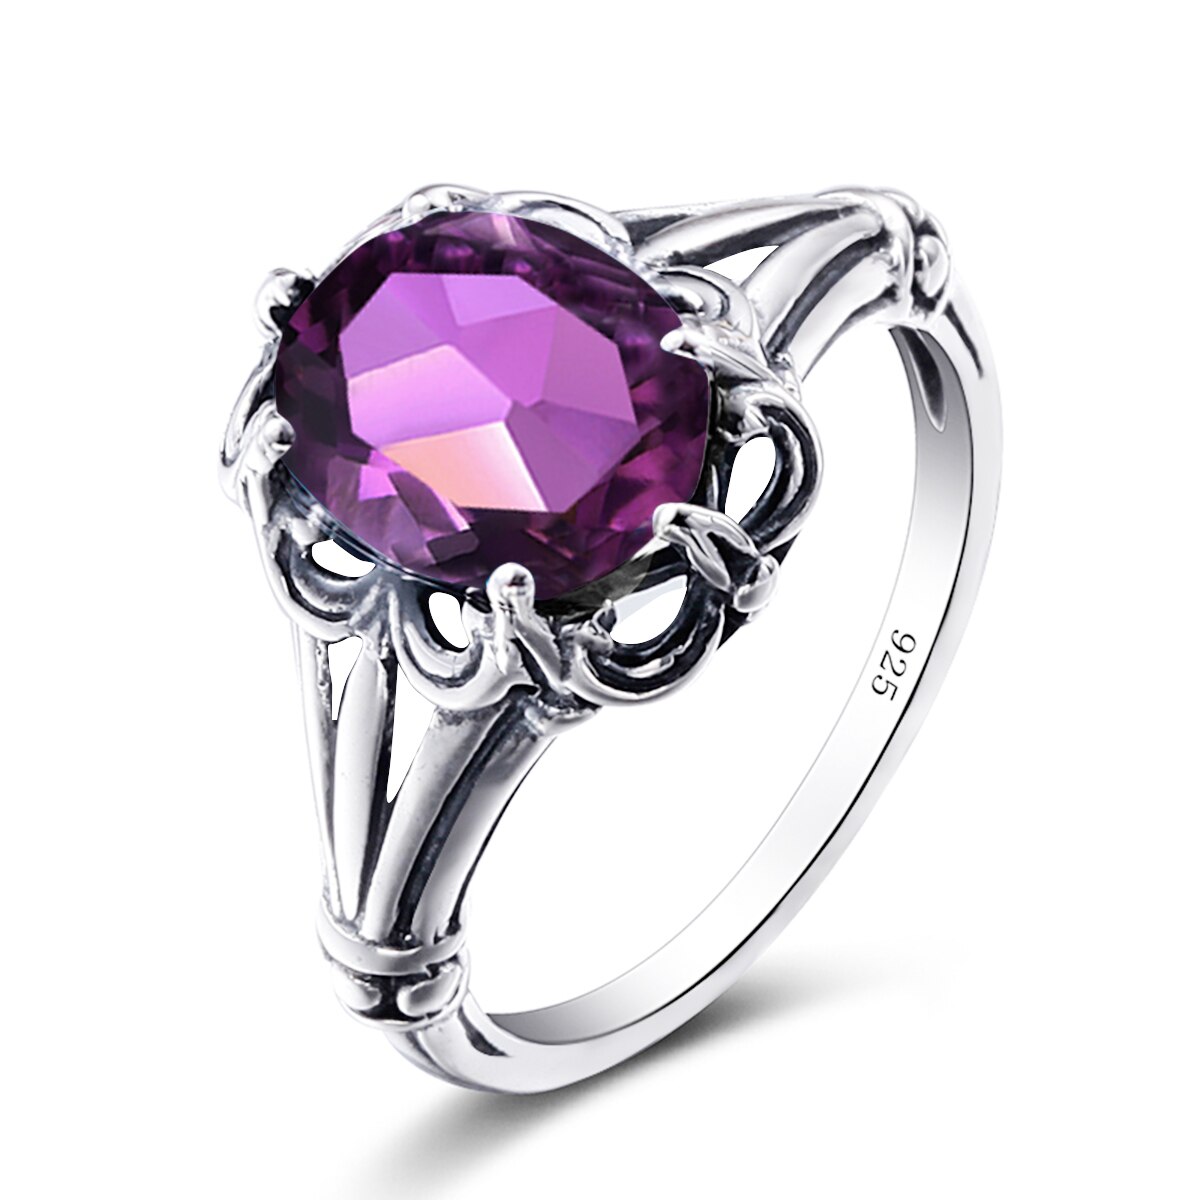 100% 925 Sterling Silver Rings Oval Design Garnet Bohemian Handmade Victoria Wieck Rings For Women Fine Jewelry Amethyst